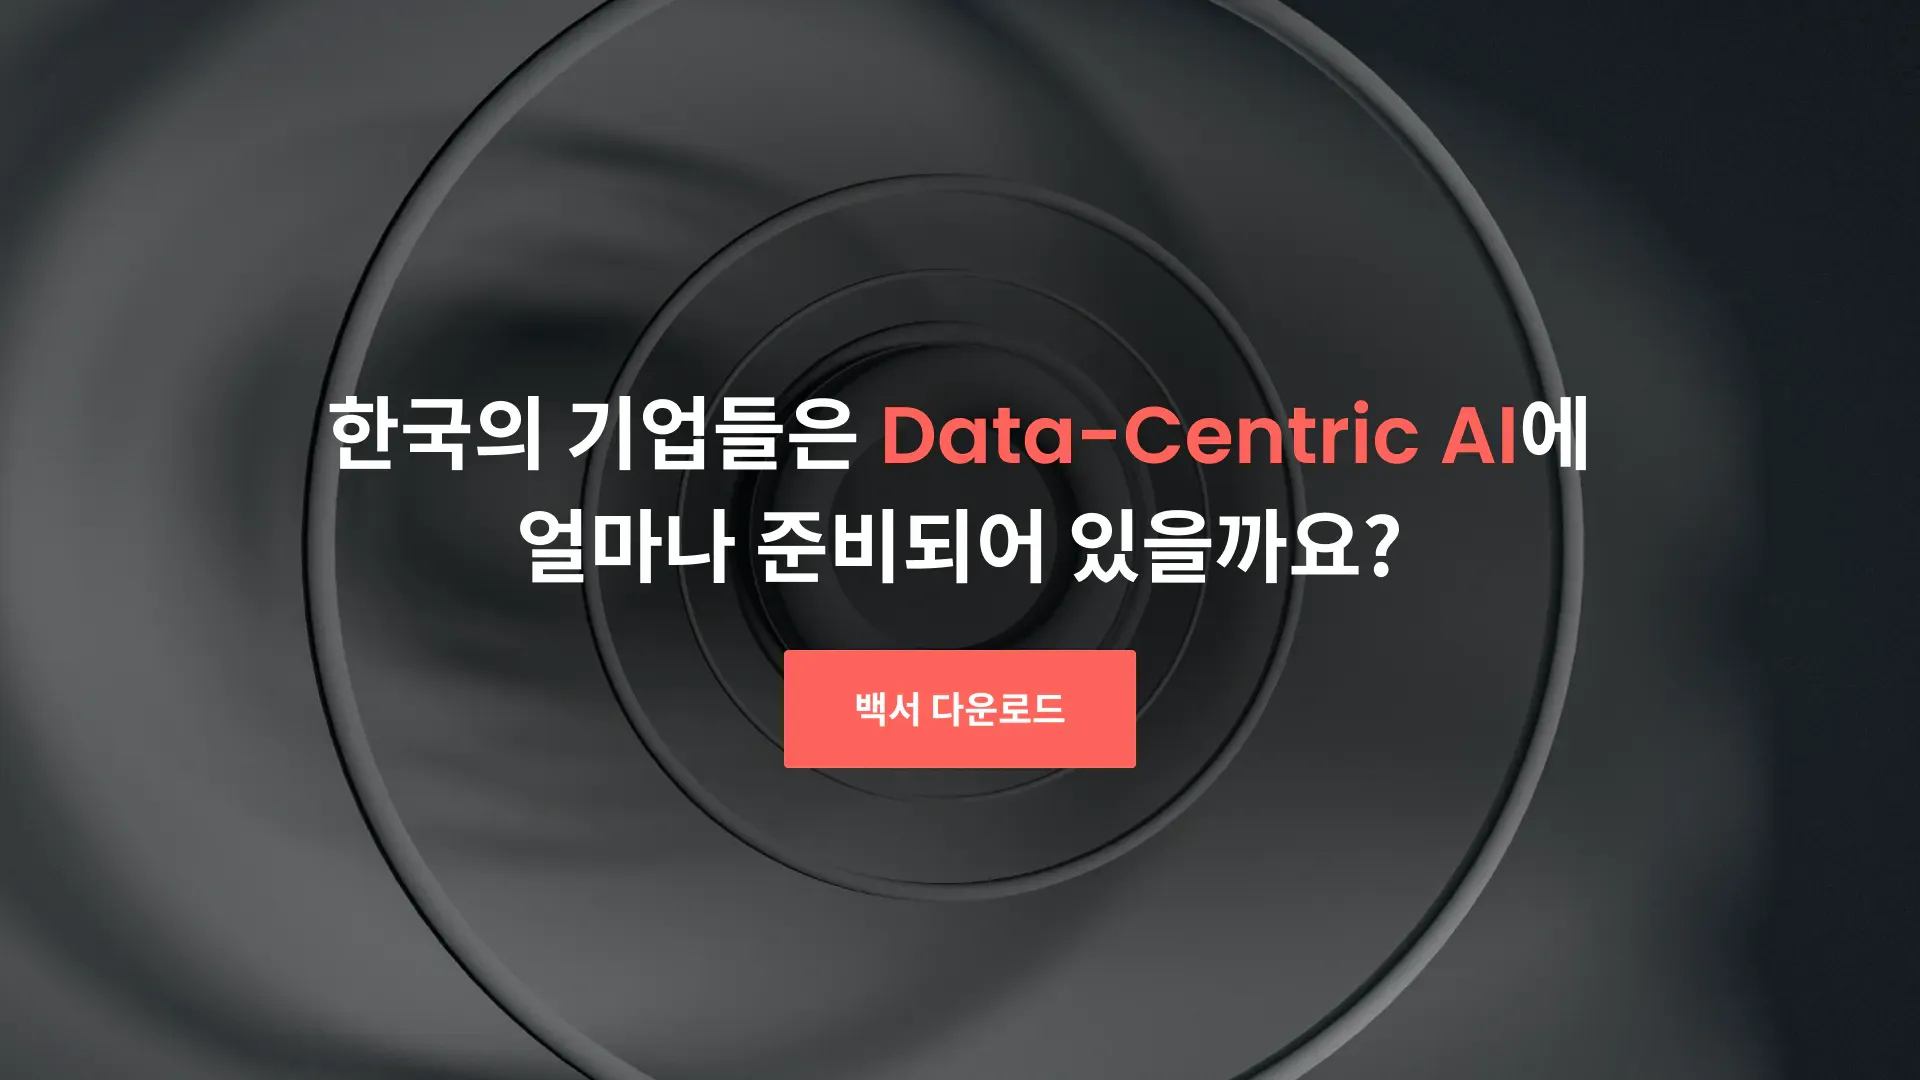 한국의 기업들은 Data-Centric AI에 얼마나 준비되어 있을까요?